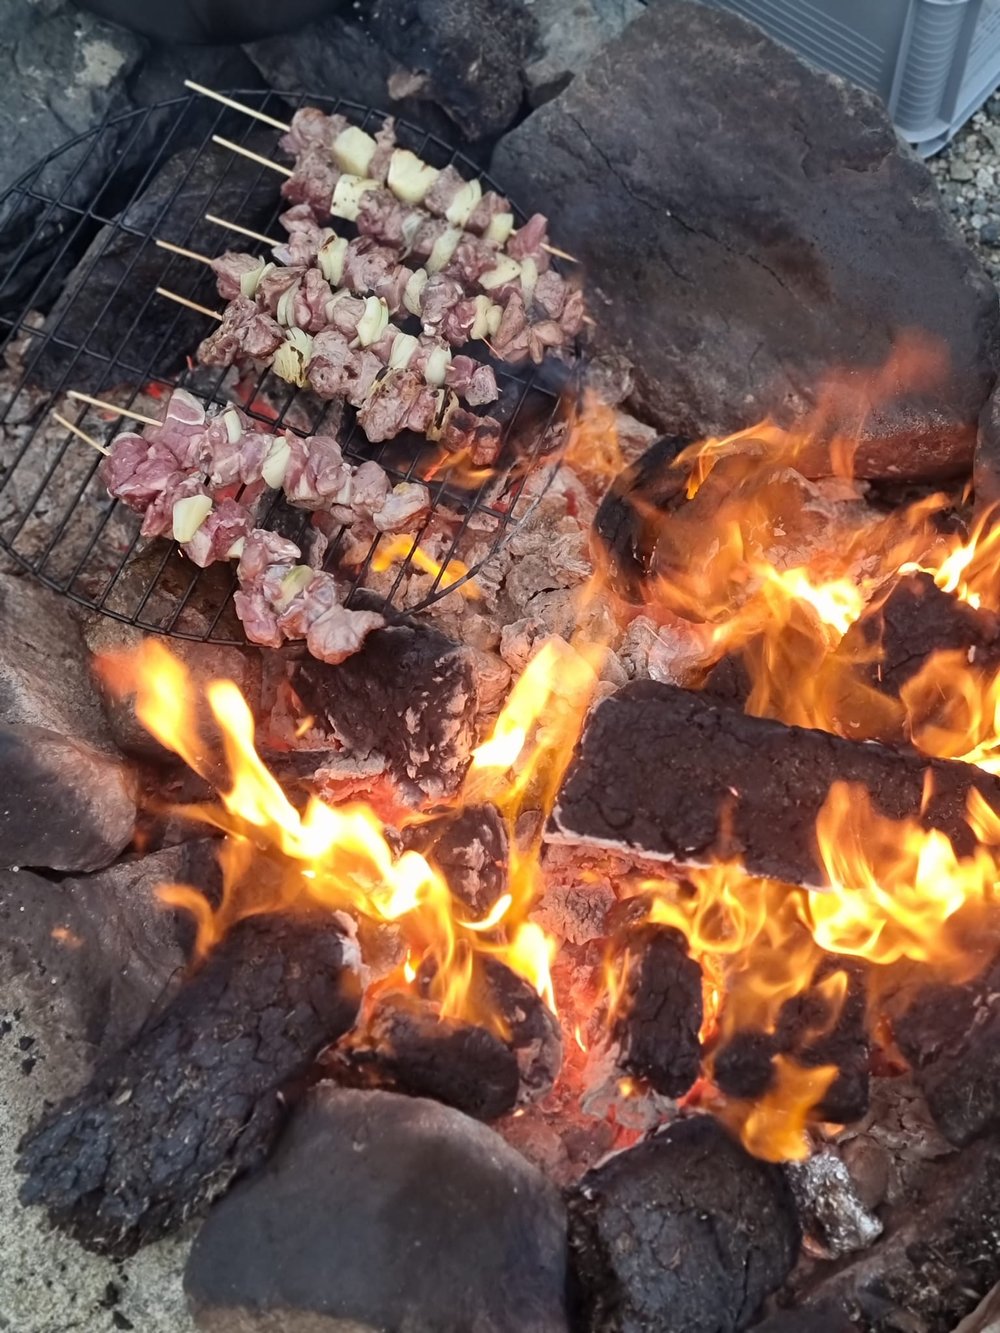 creel yard lamb kebabs on fire.jpg